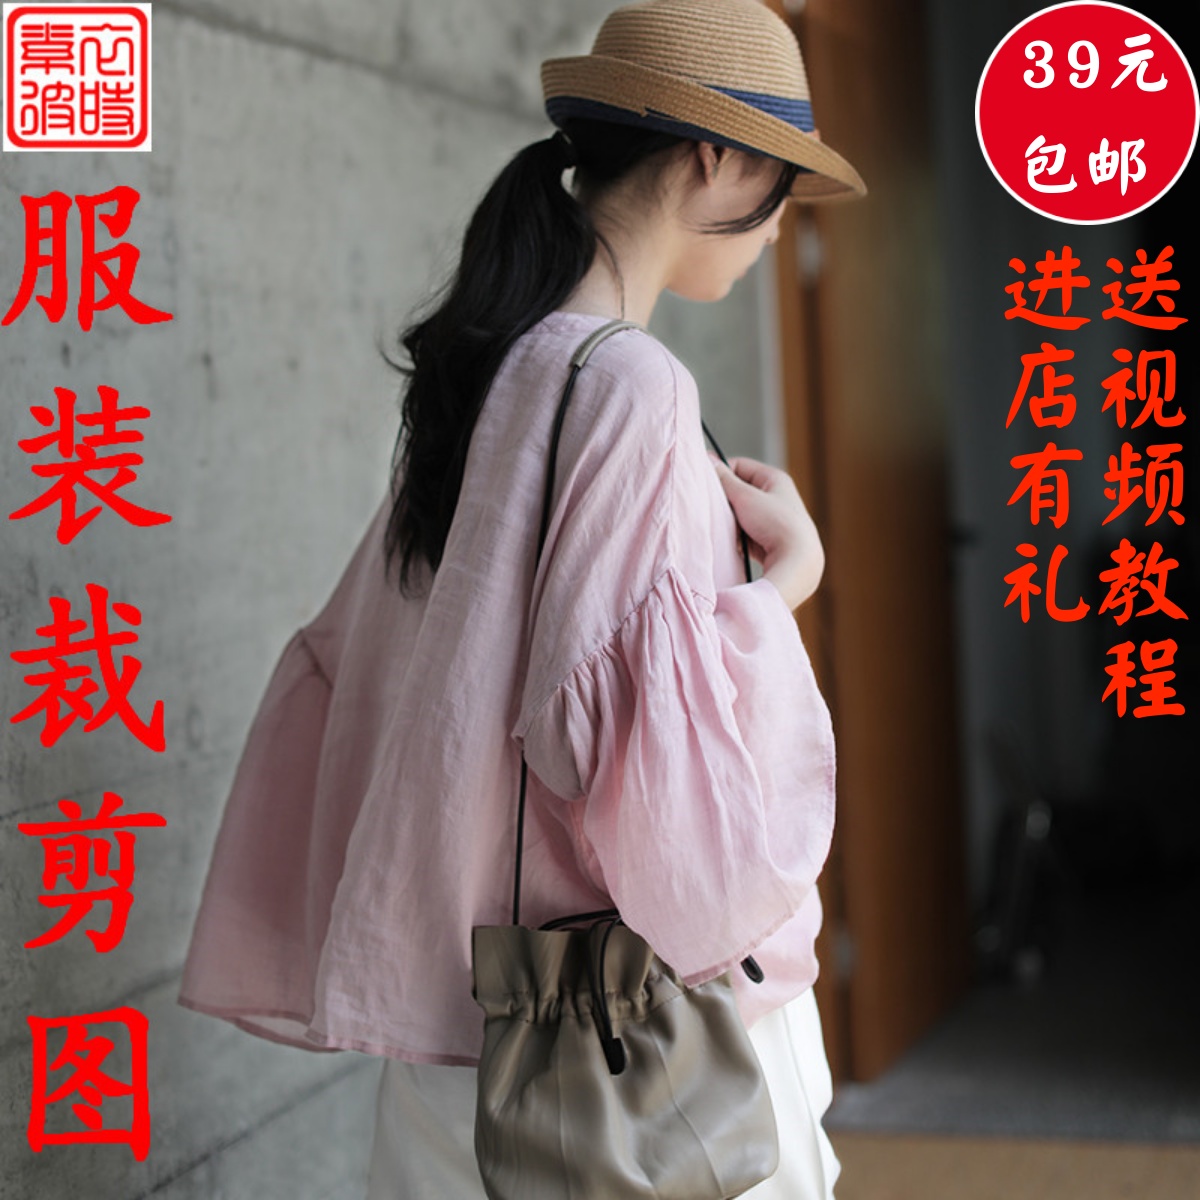 素-夏季女装短袖宽松上衣服装裁剪图 diy女士短袖蝙蝠衫1:1纸样板